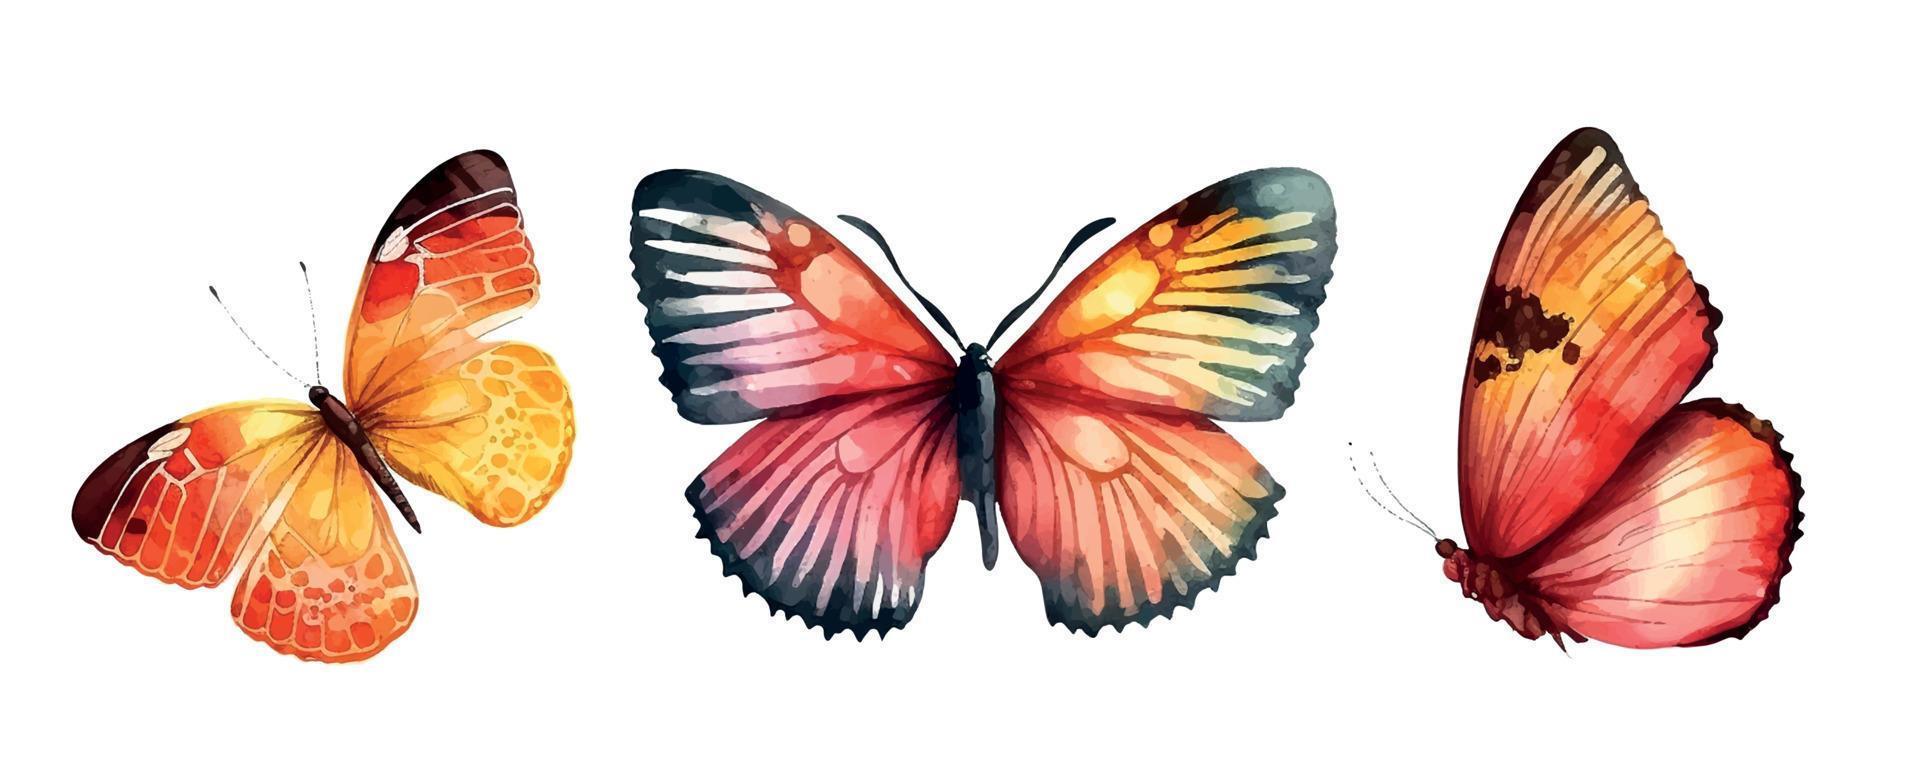 Sammlung Aquarell von fliegend Schmetterlinge Aquarell einstellen vektor